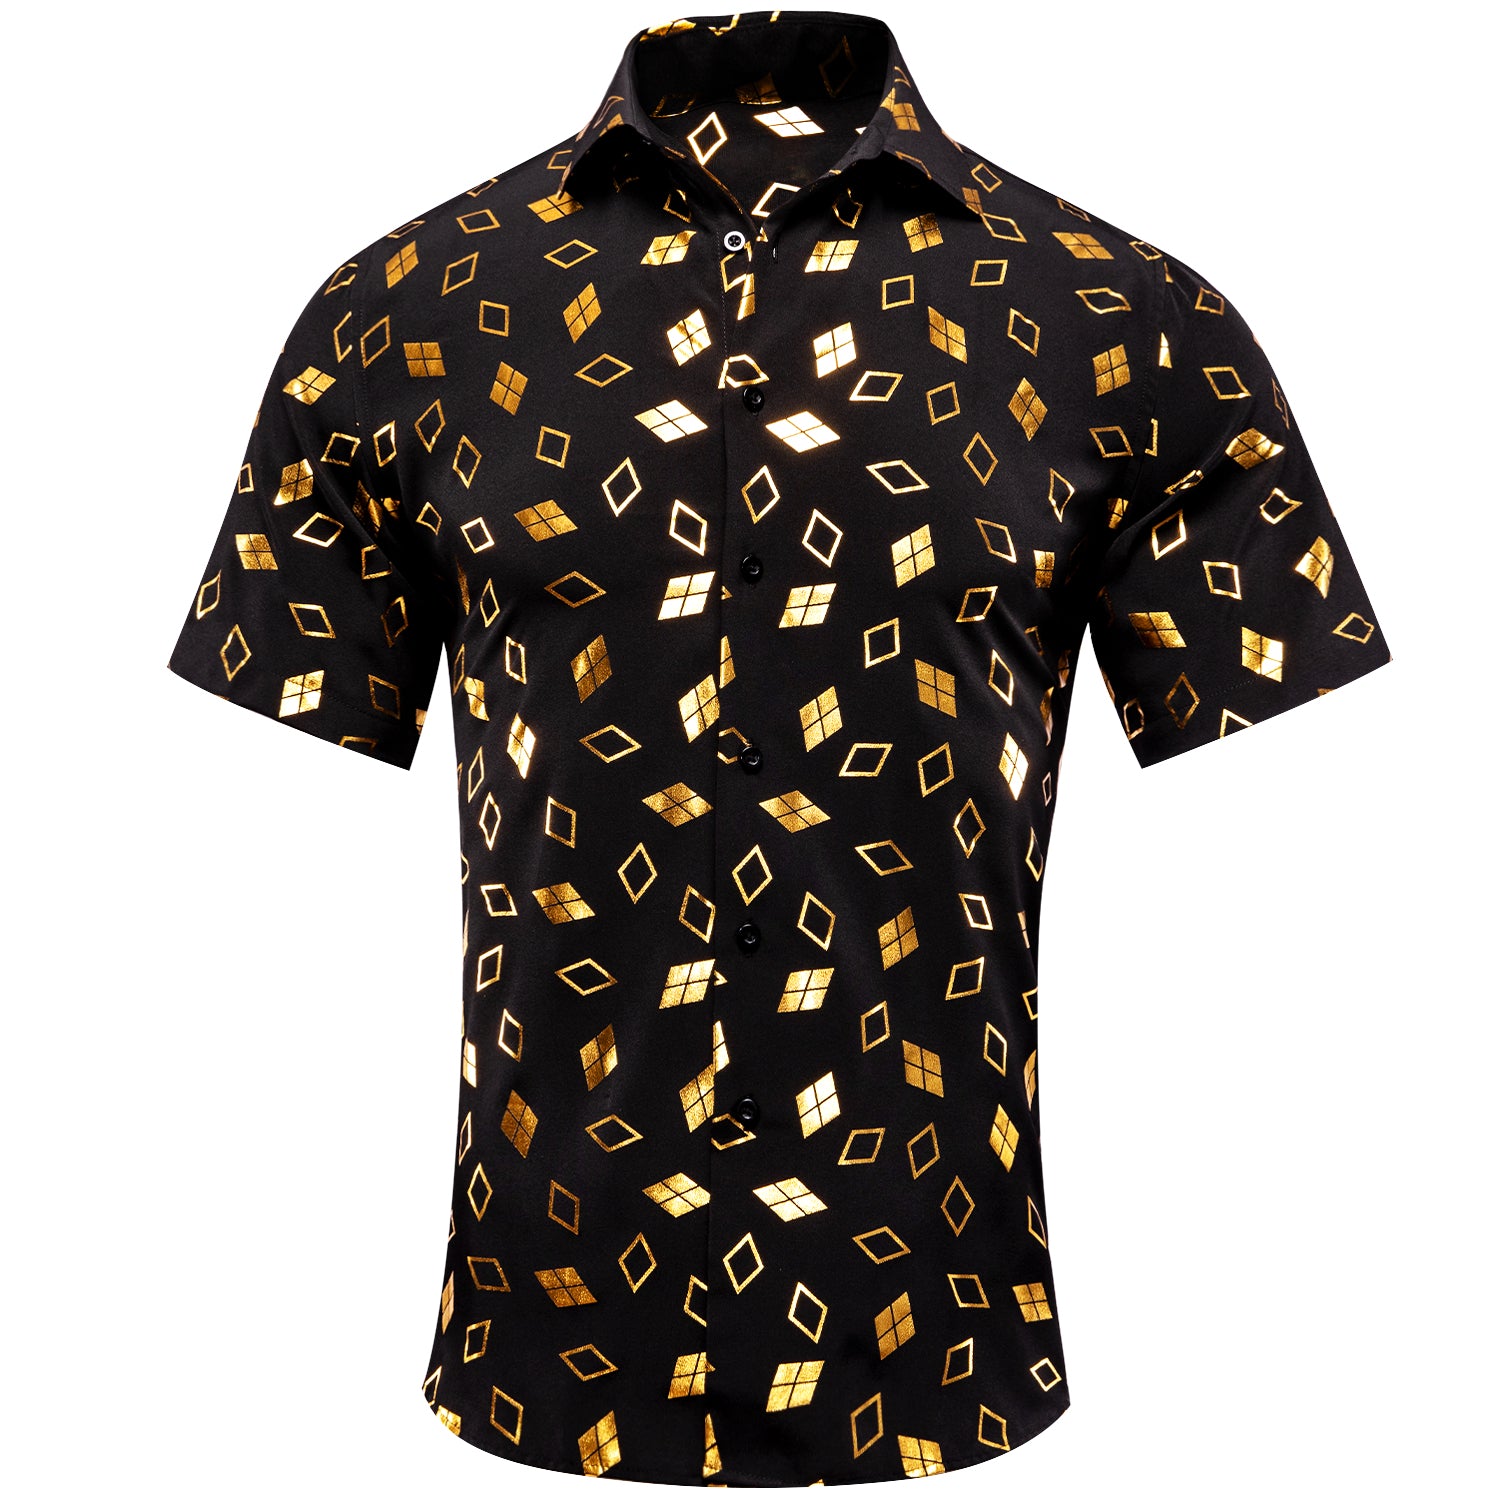 New Black Golden Square Men's Short Sleeve Shirt